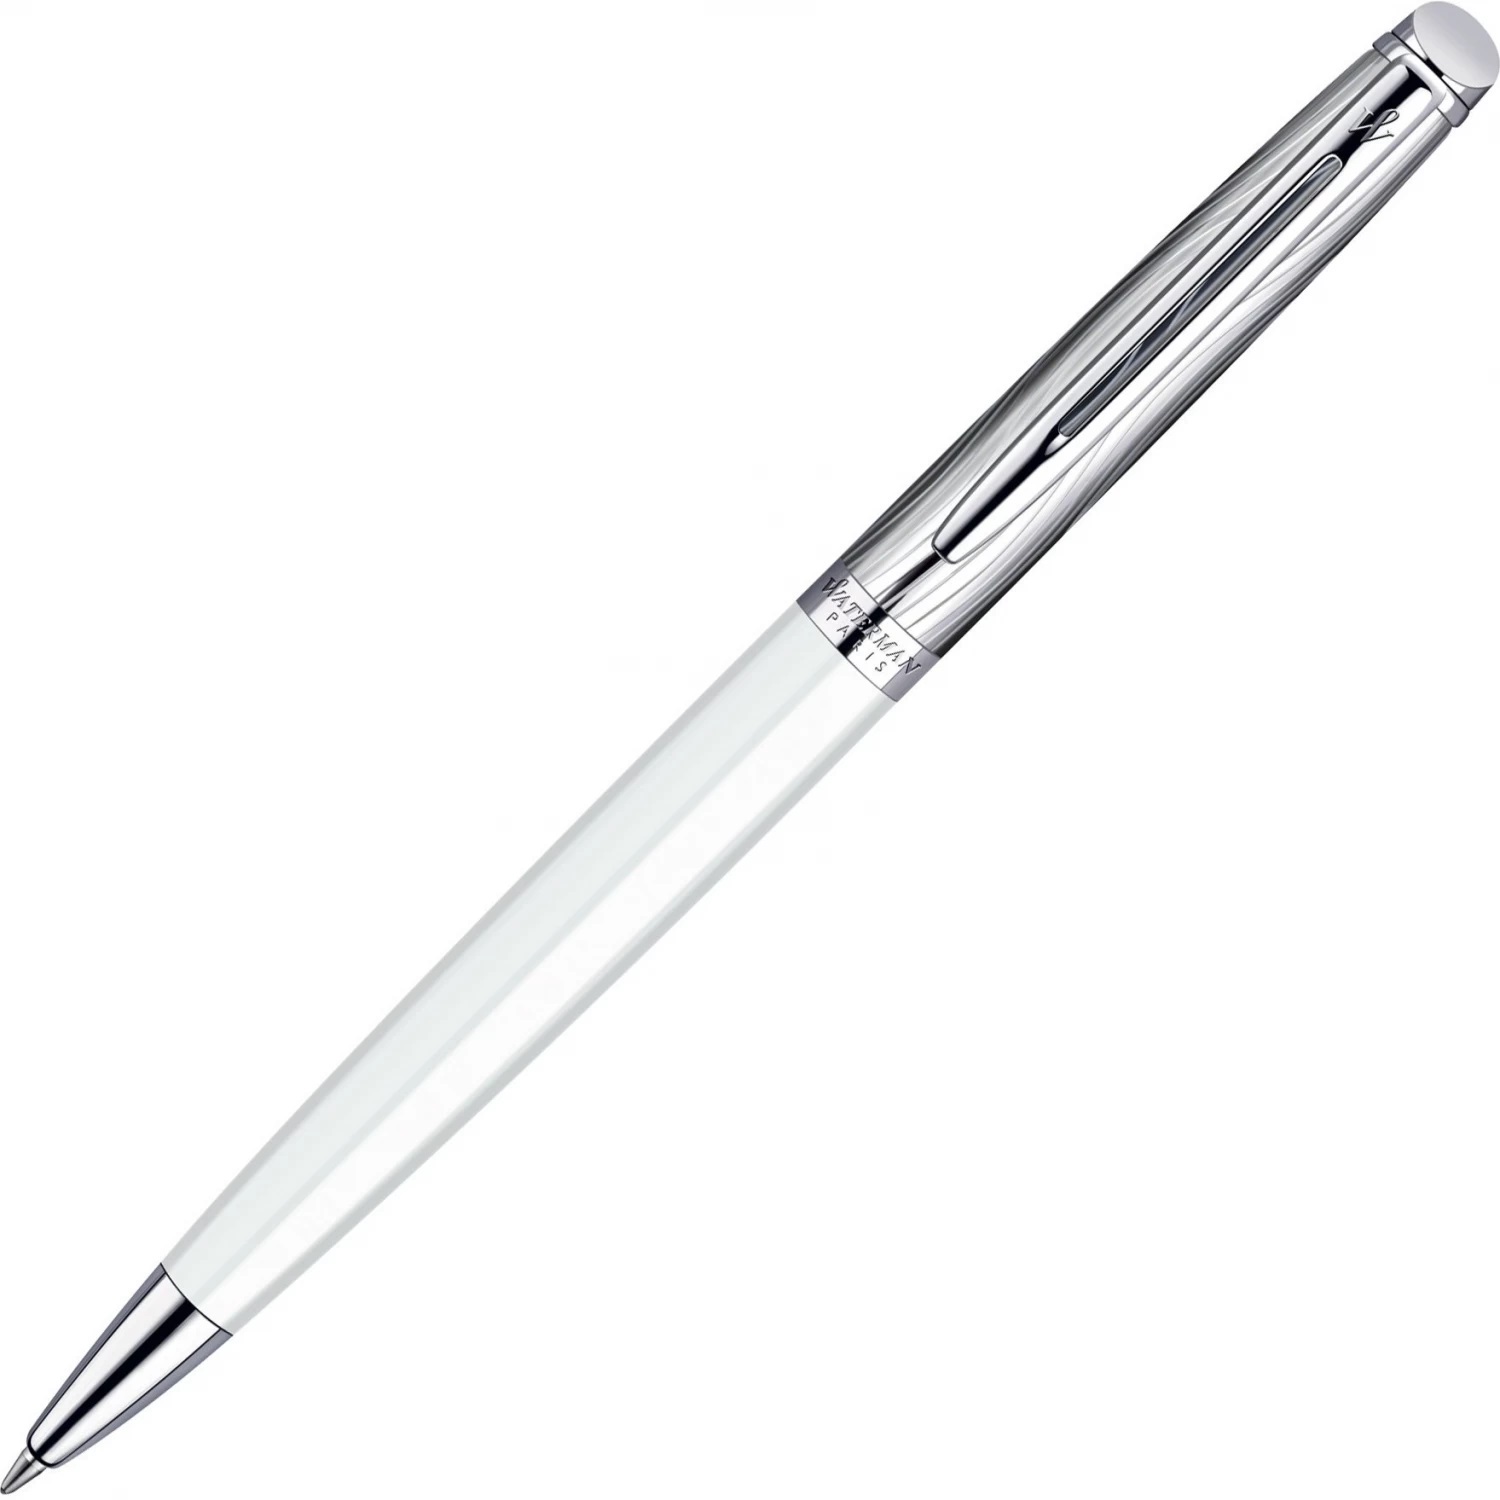 Шариковая ручка Waterman Hemisphere S0921310 (S0921310) ручка подарочная шариковая в кожзам футляре поворотная vip корпус золотистый корпус